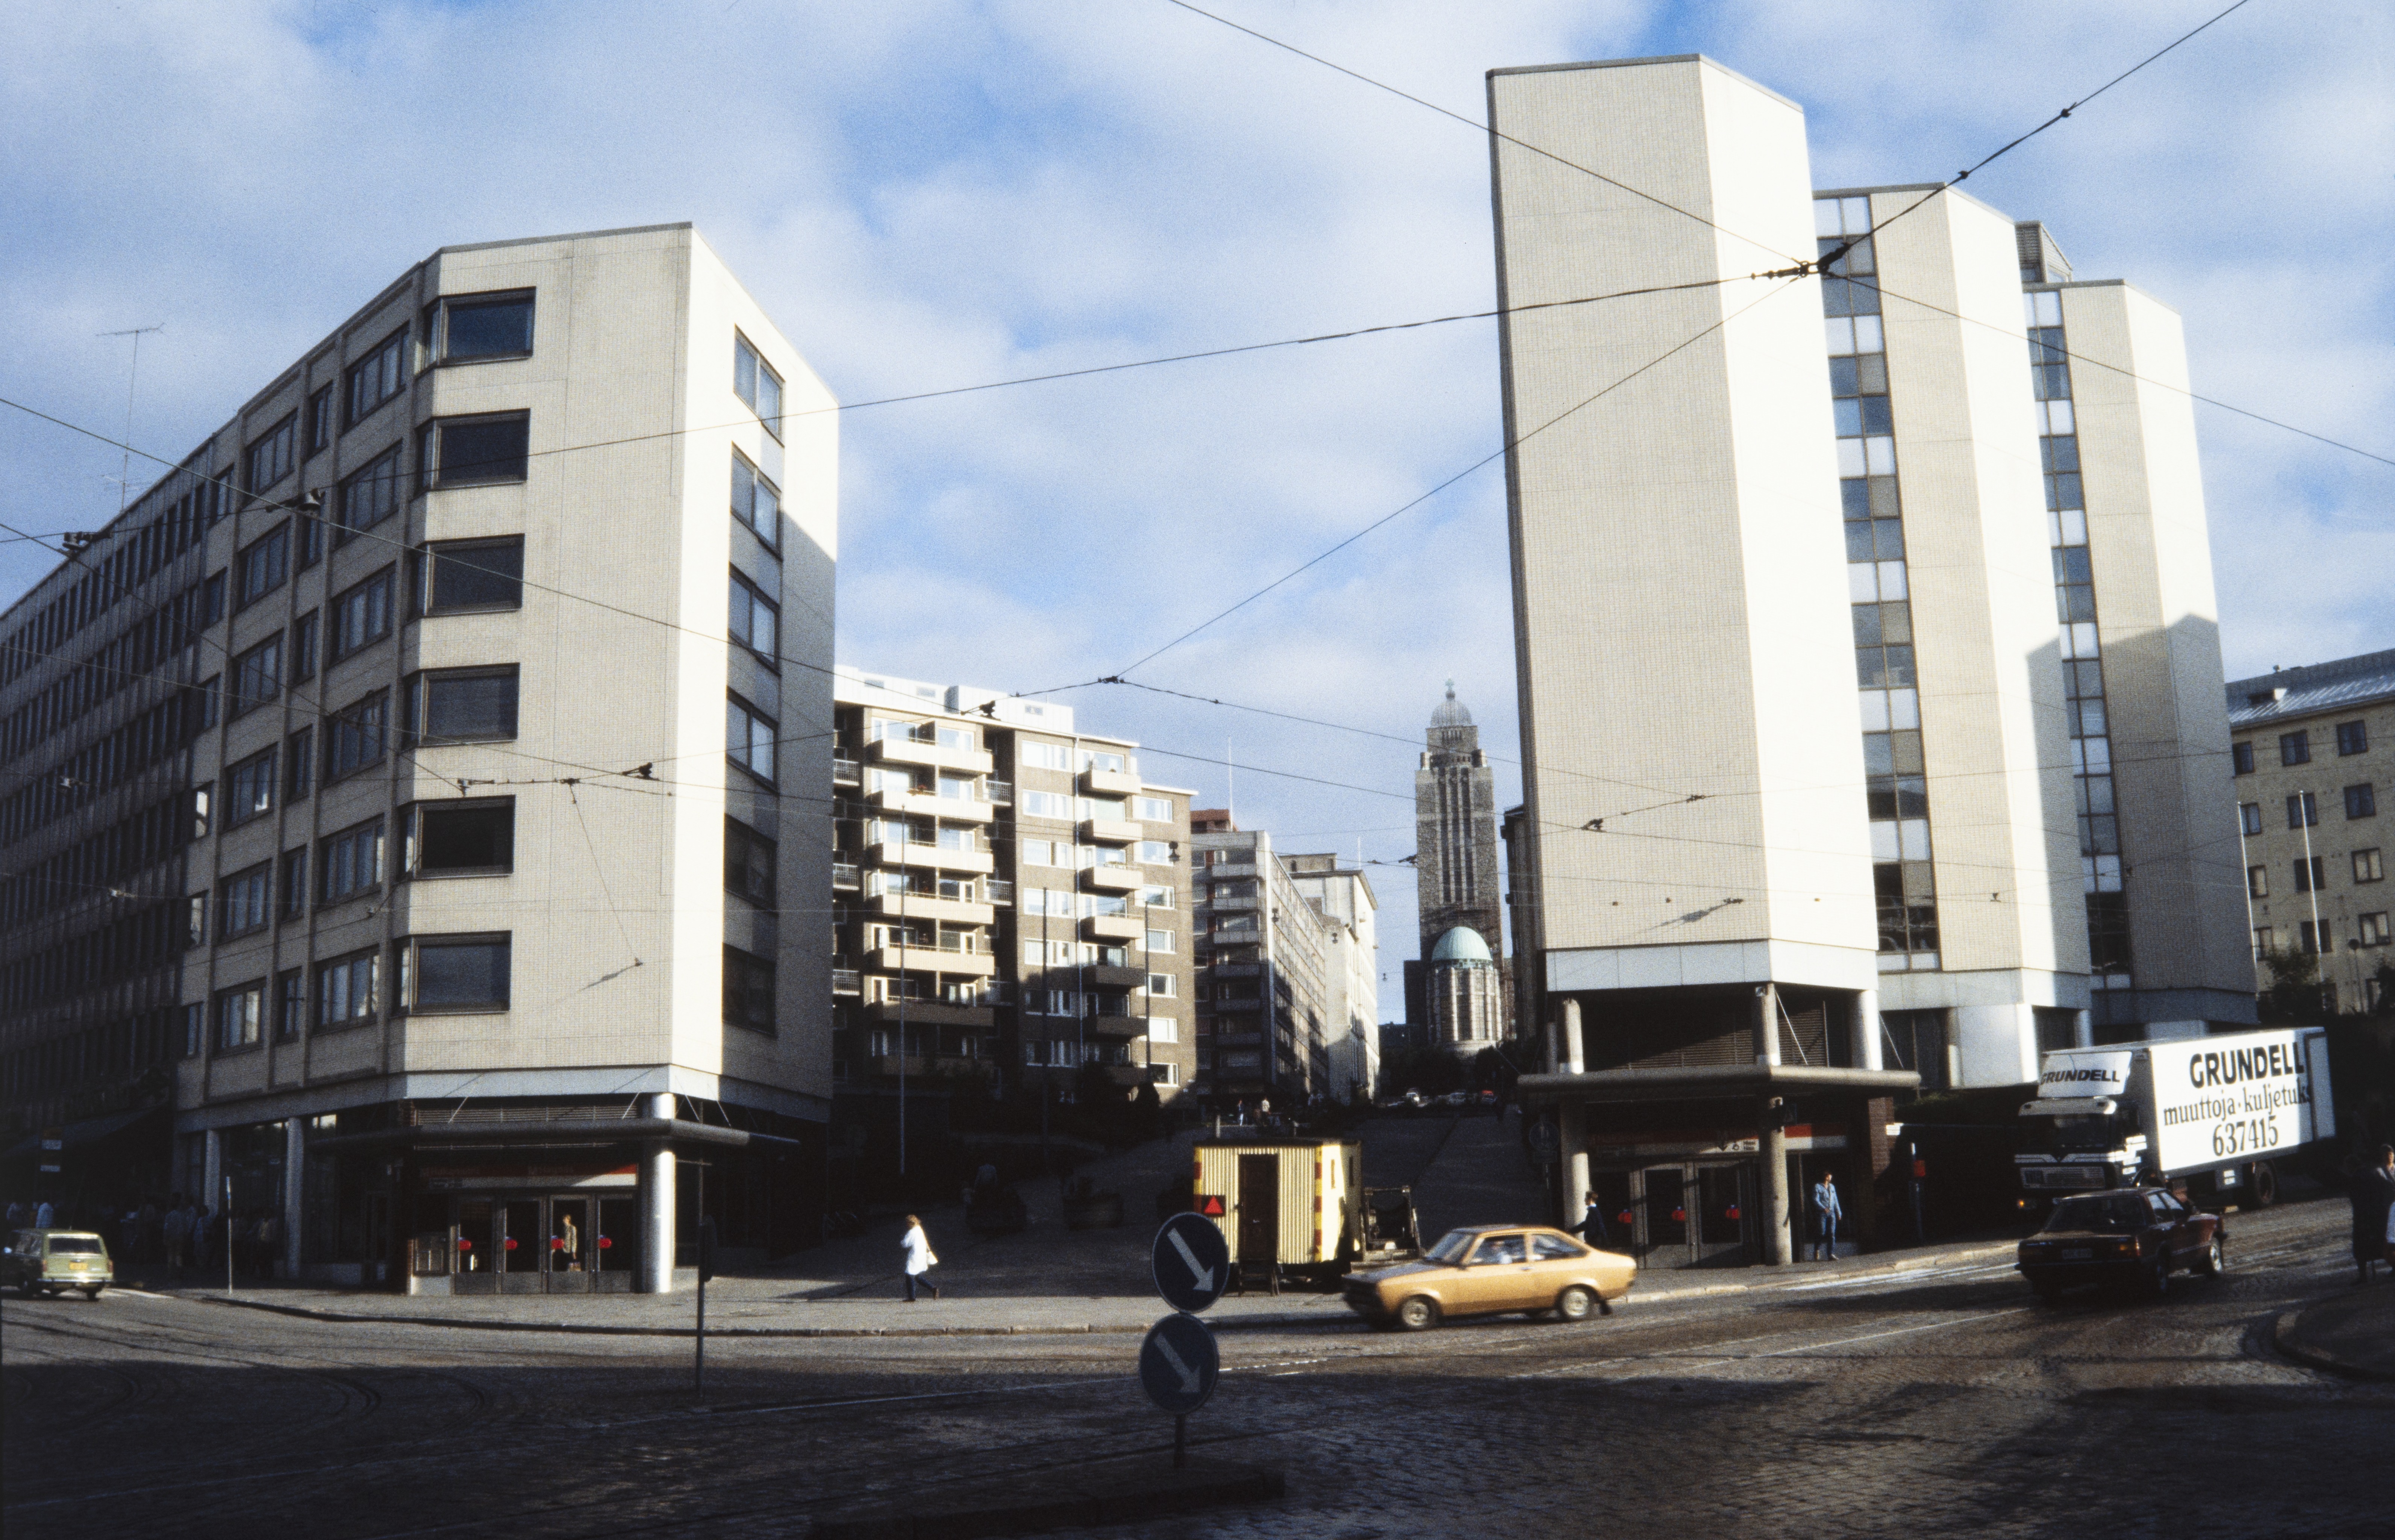 Siltasaarenkatu 13. Rakennusvalvontaviraston toimitalo. Kaupungin rakennuttama Kallion toimistotalot. Jaakko Laapotin vuonna 1979 suunnittelema rakennus valmistui vuonna 1981. Rakennusprojekti toteutettiin KVR-urakkakilpailuna. Siltasaarenkadun päädyssä näkyy Kallion kirkko.